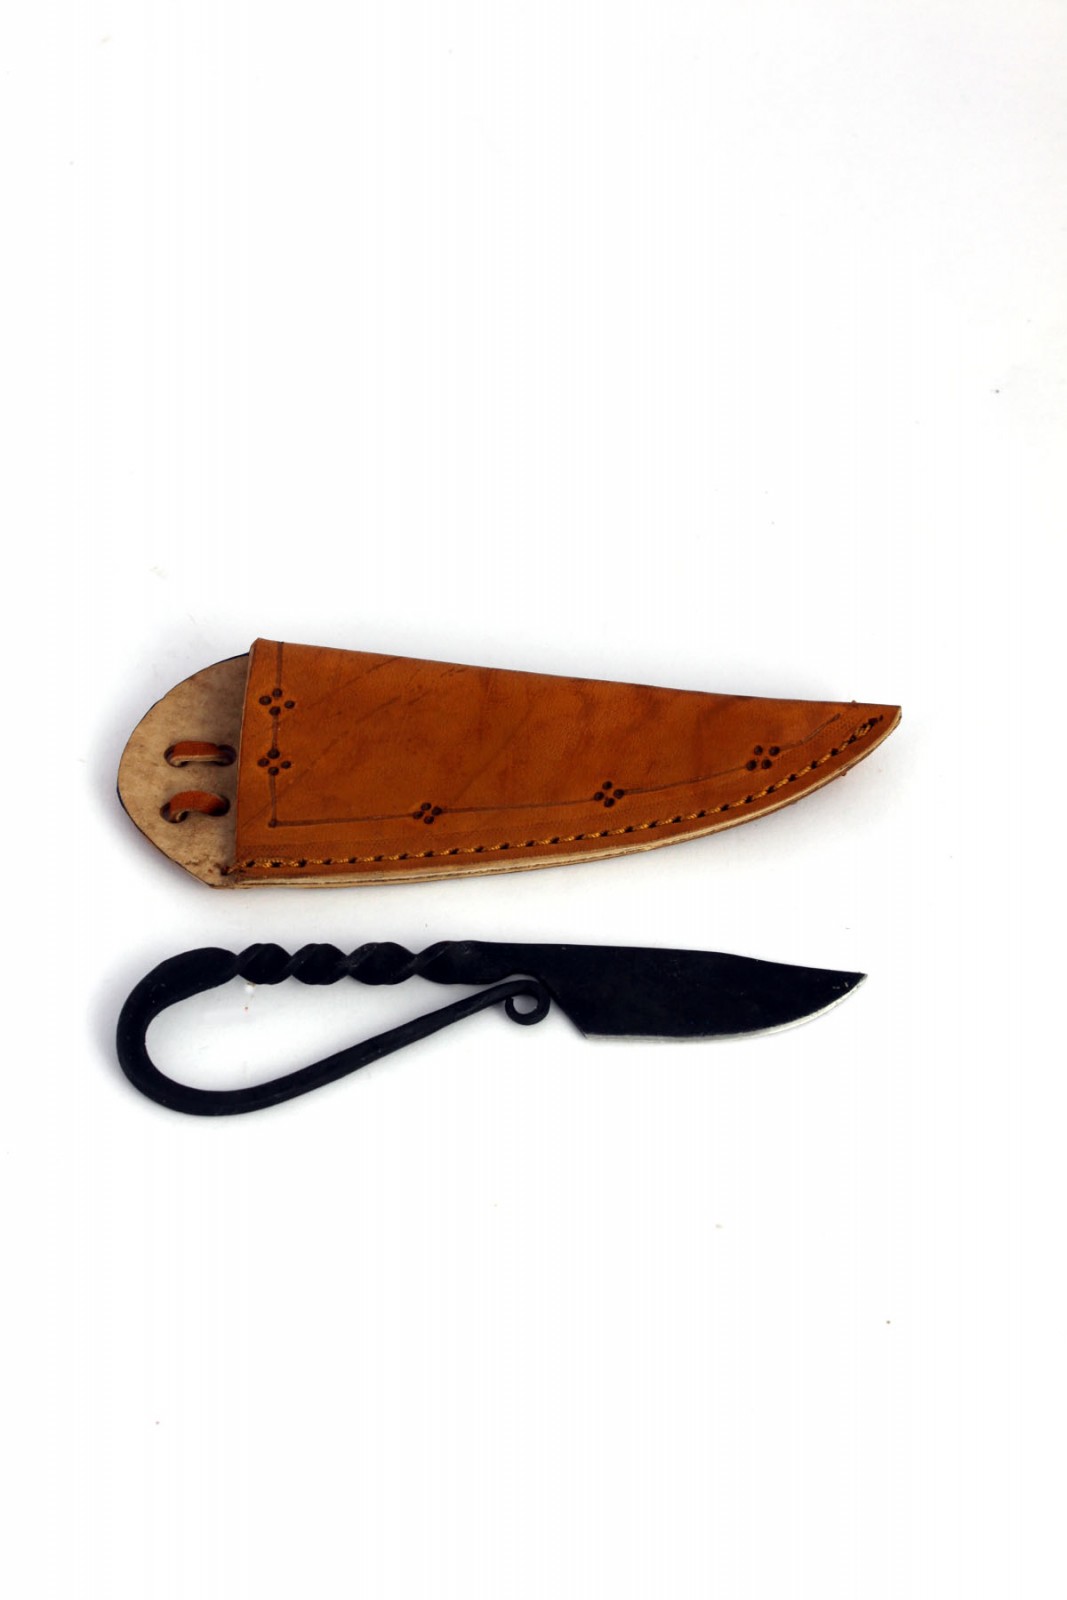 Mittelalter Messer 13,5 cm